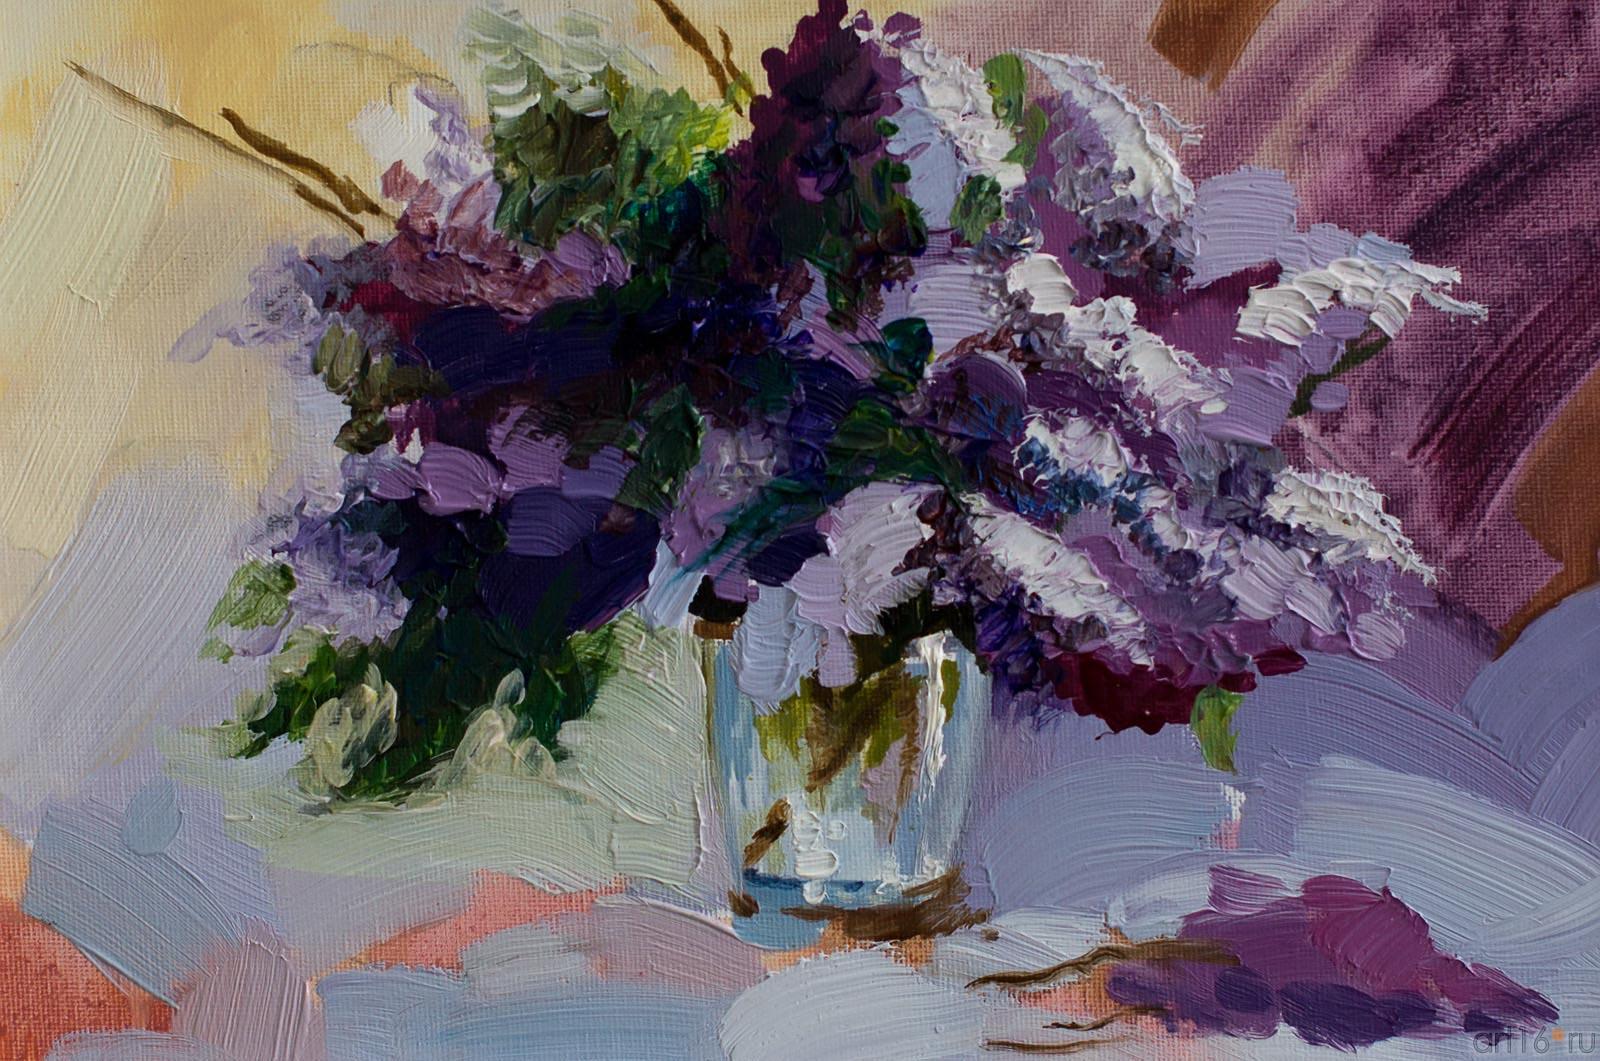 Габдрахманова Елена «Сирень в вазе»::Танец цветов. Выставка